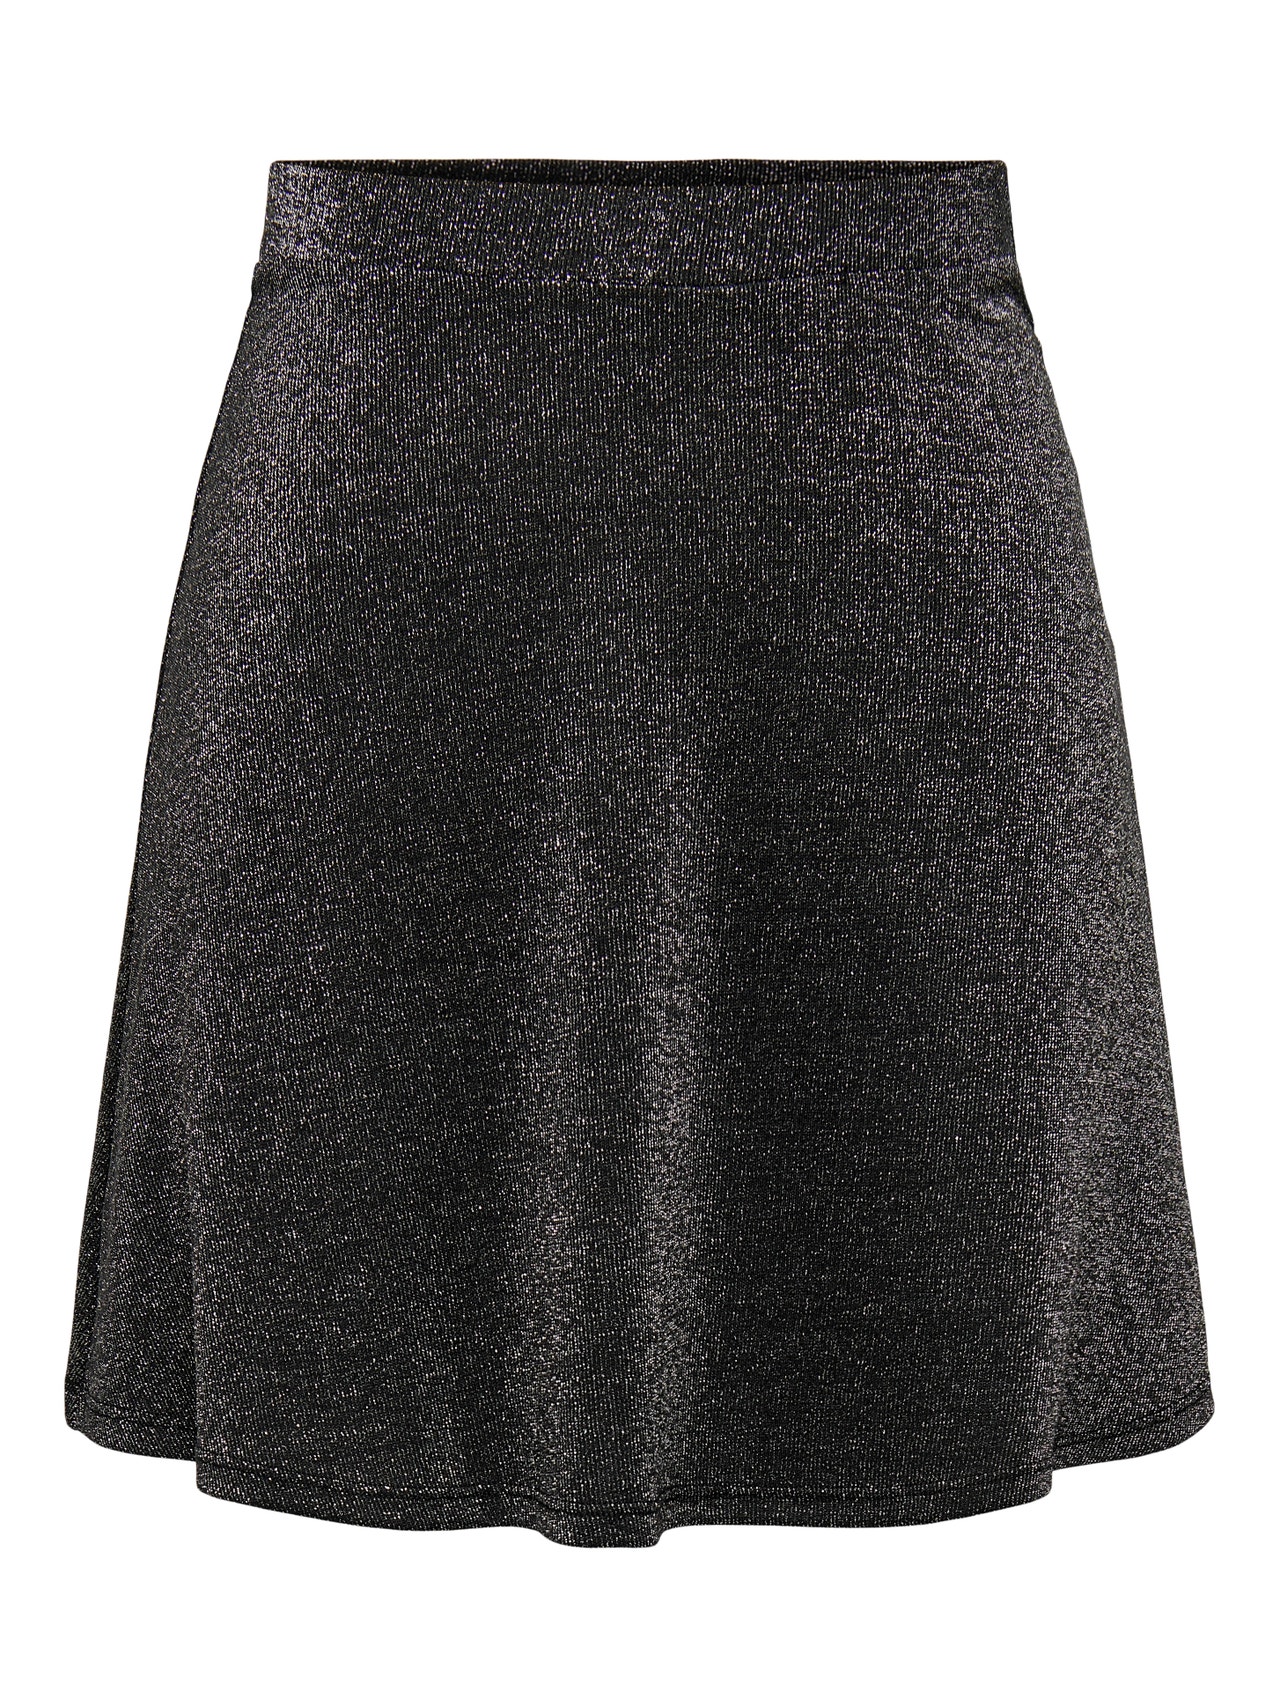 ONLY Short skirt -Black - 15275408